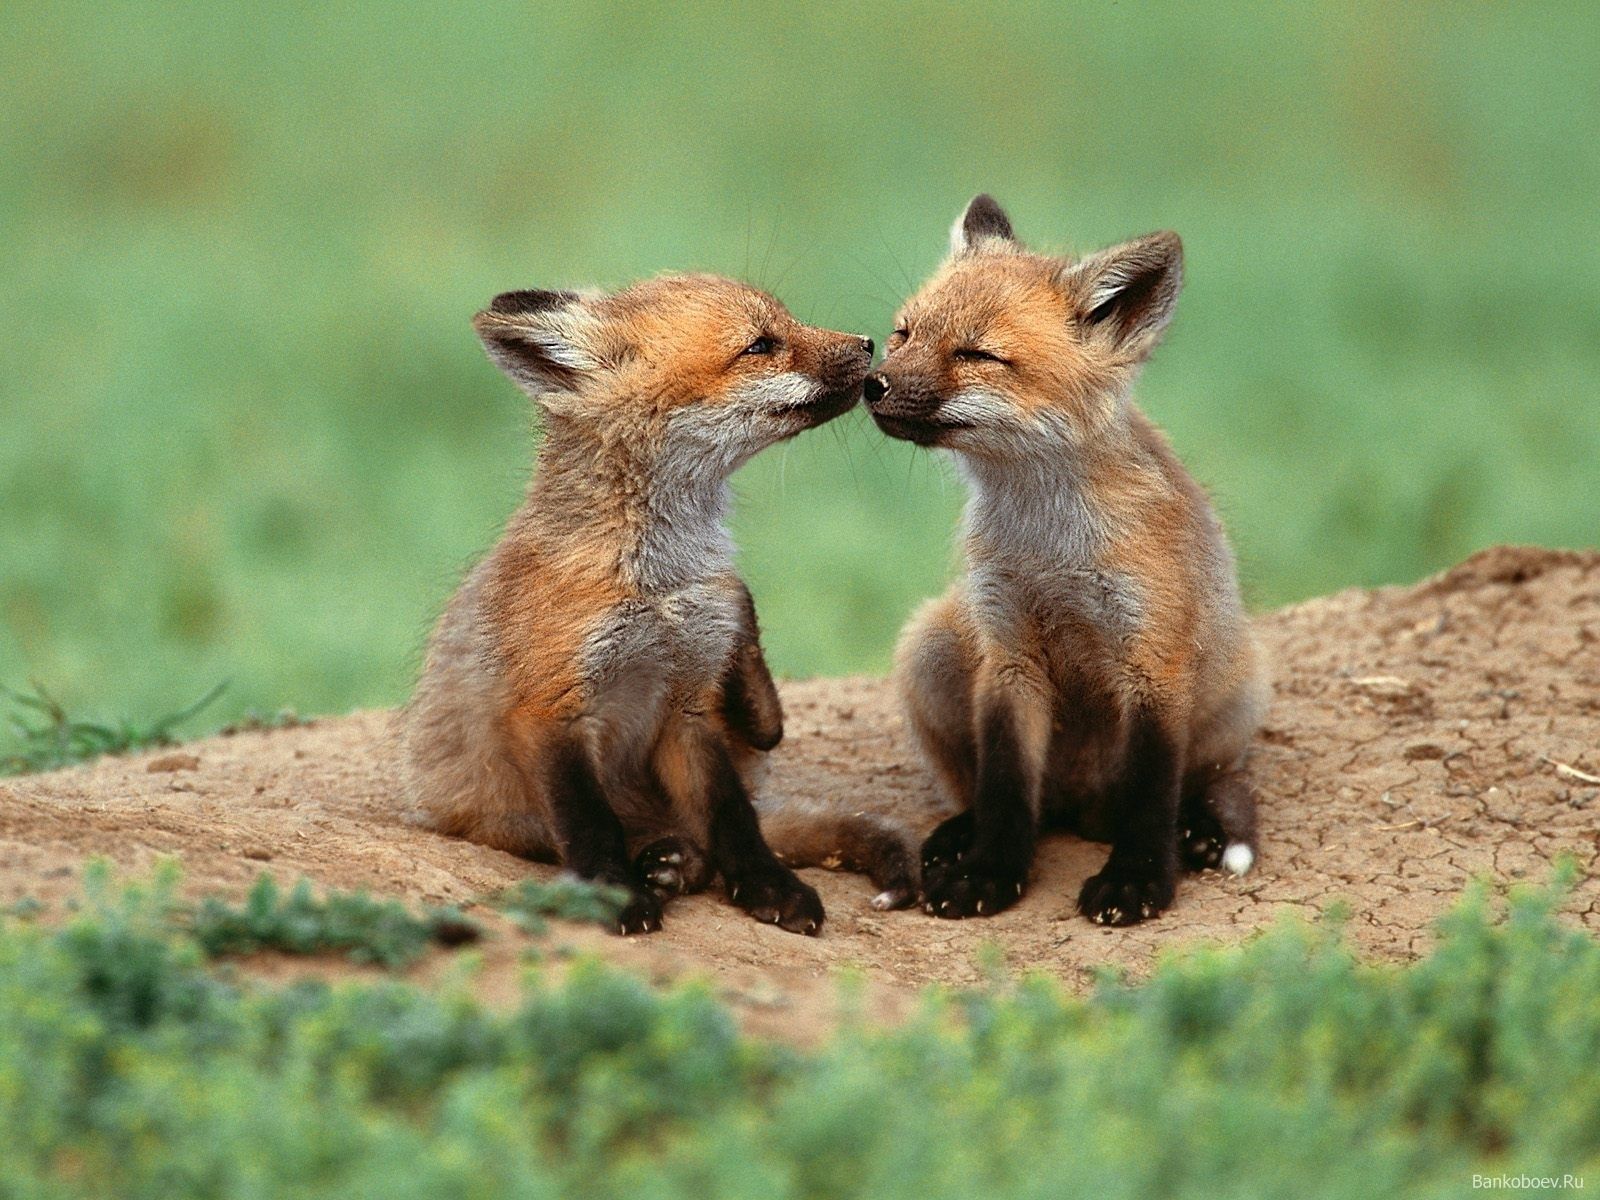 عکس پروفایل عاشقانه کیوت با طرح دو بچه روباه فسقلی